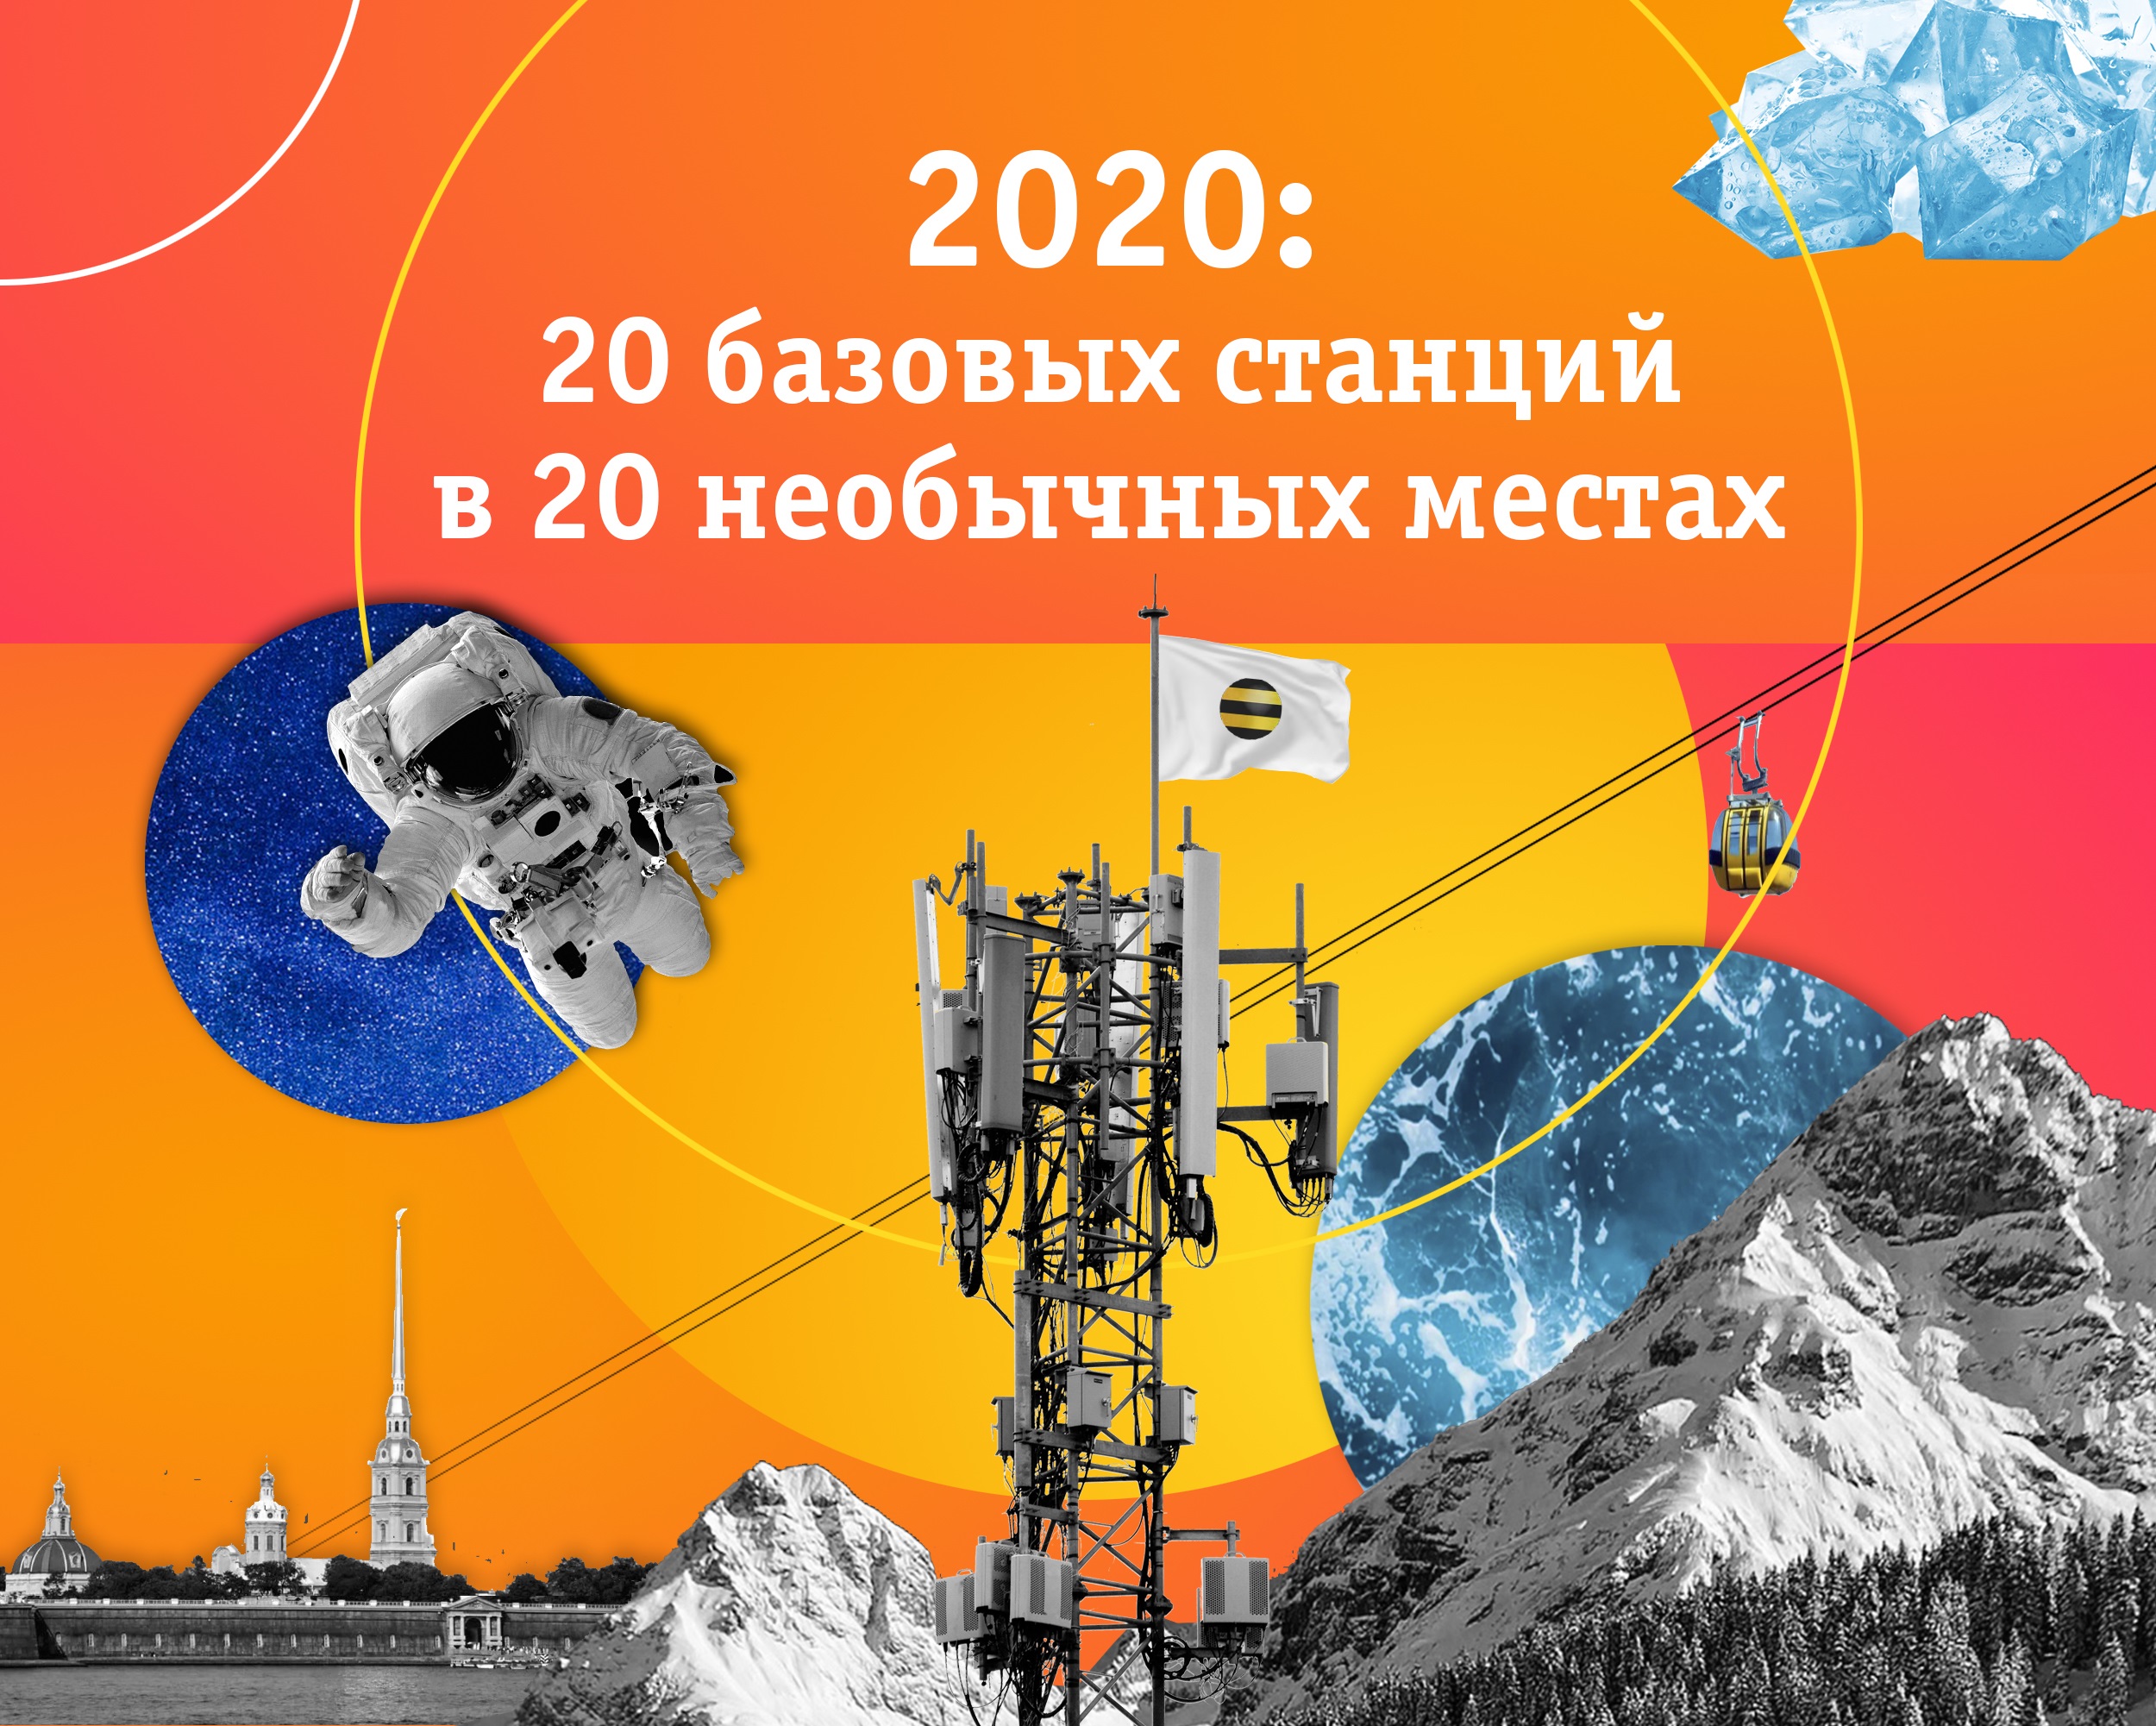 2020: 20 базовых станций в 20 необычных местах